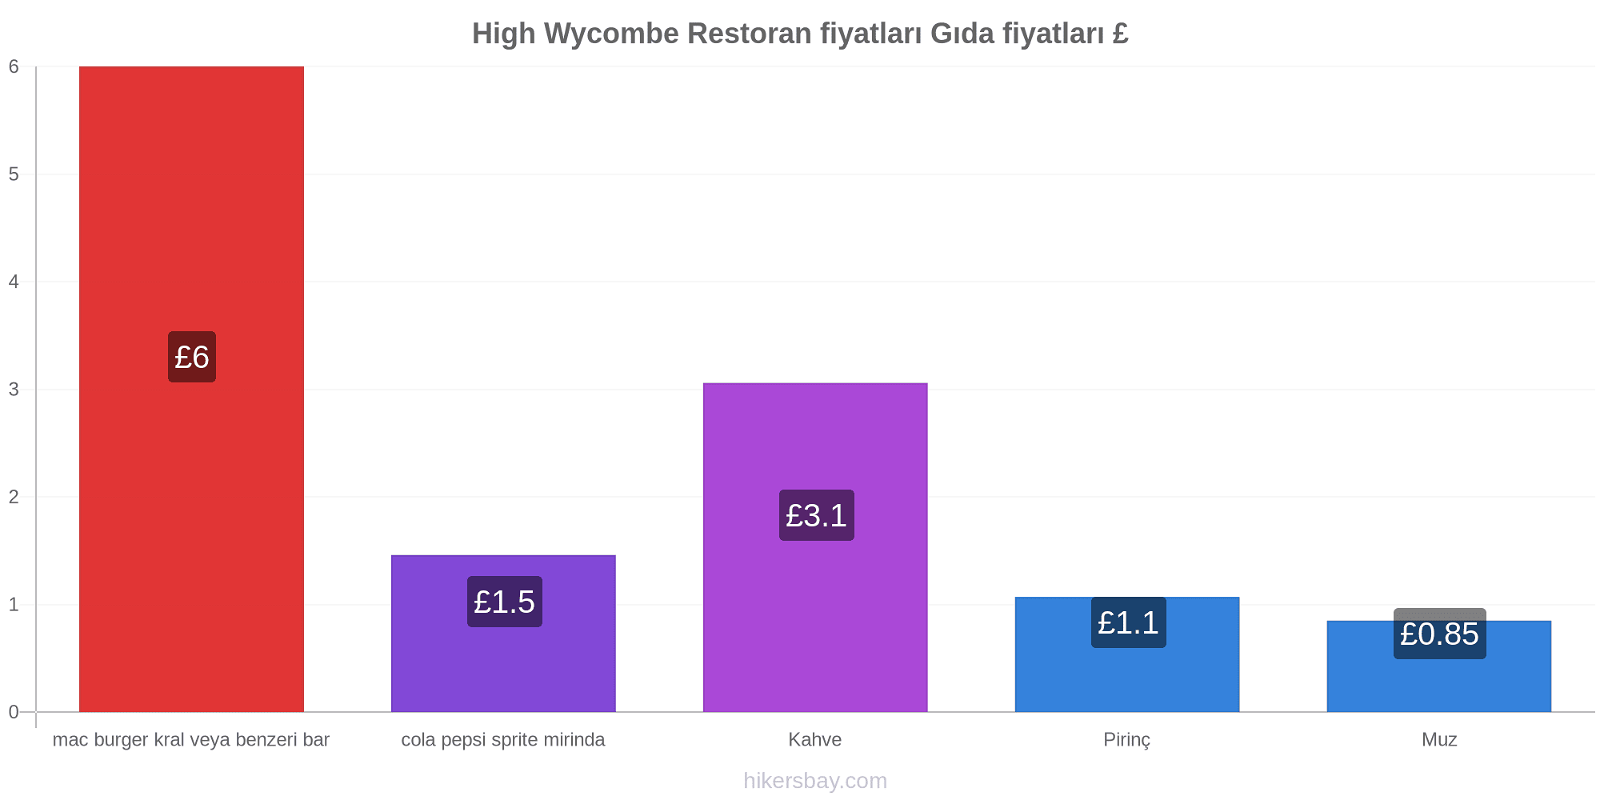 High Wycombe fiyat değişiklikleri hikersbay.com